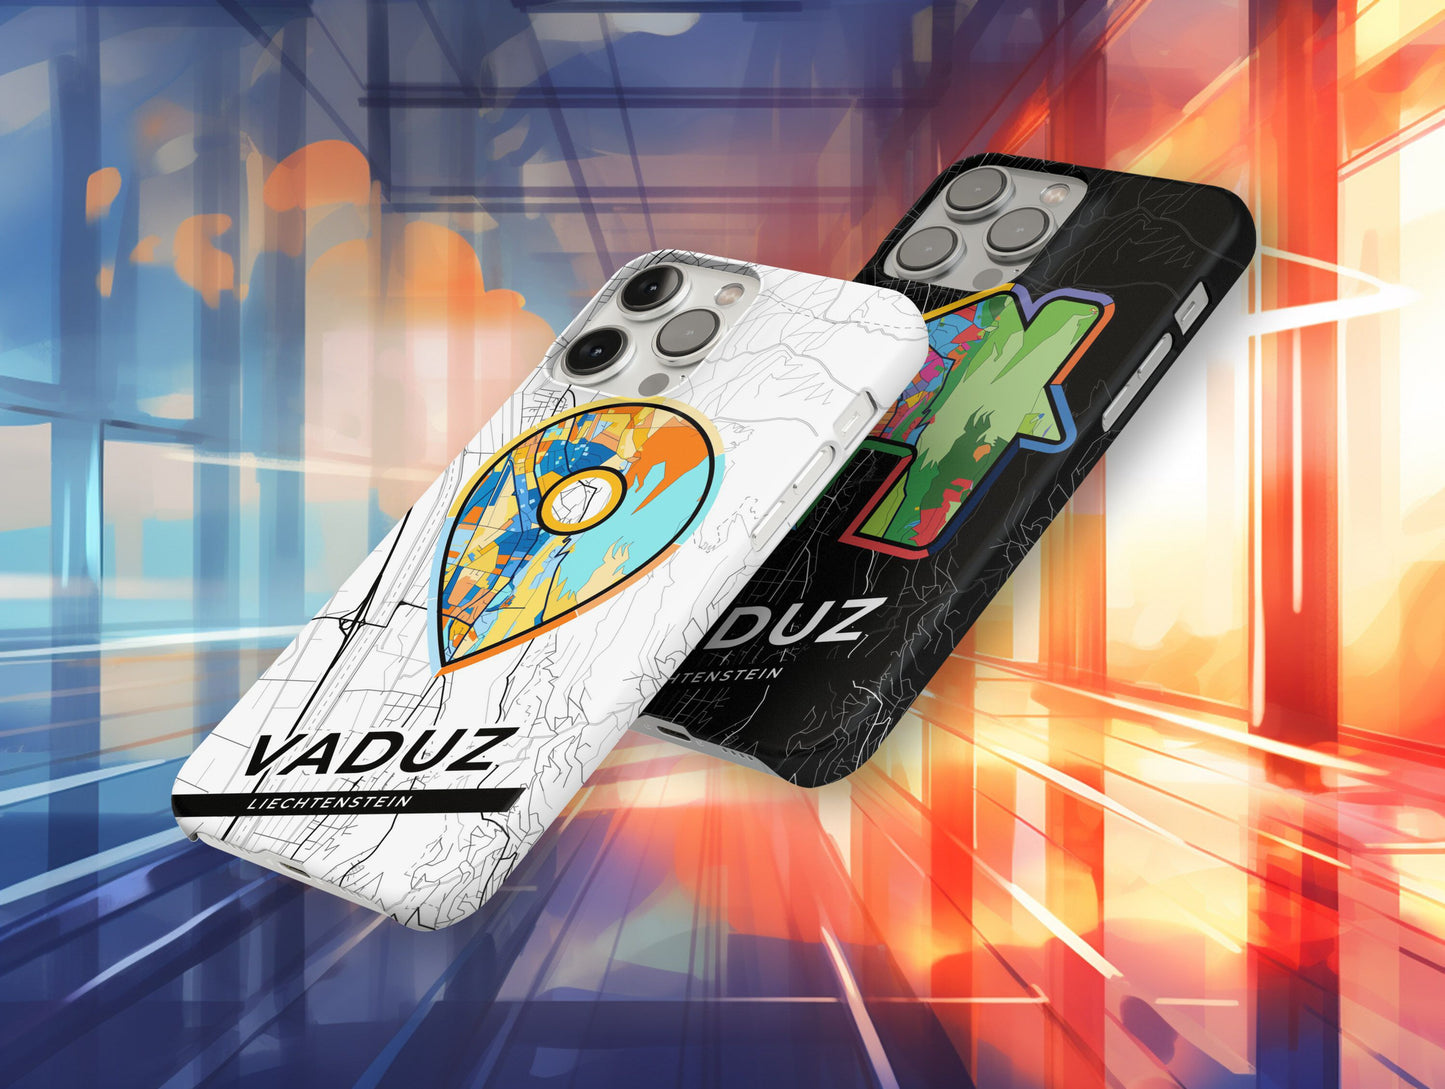 Vaduz Liechtenstein slim phone case with colorful icon